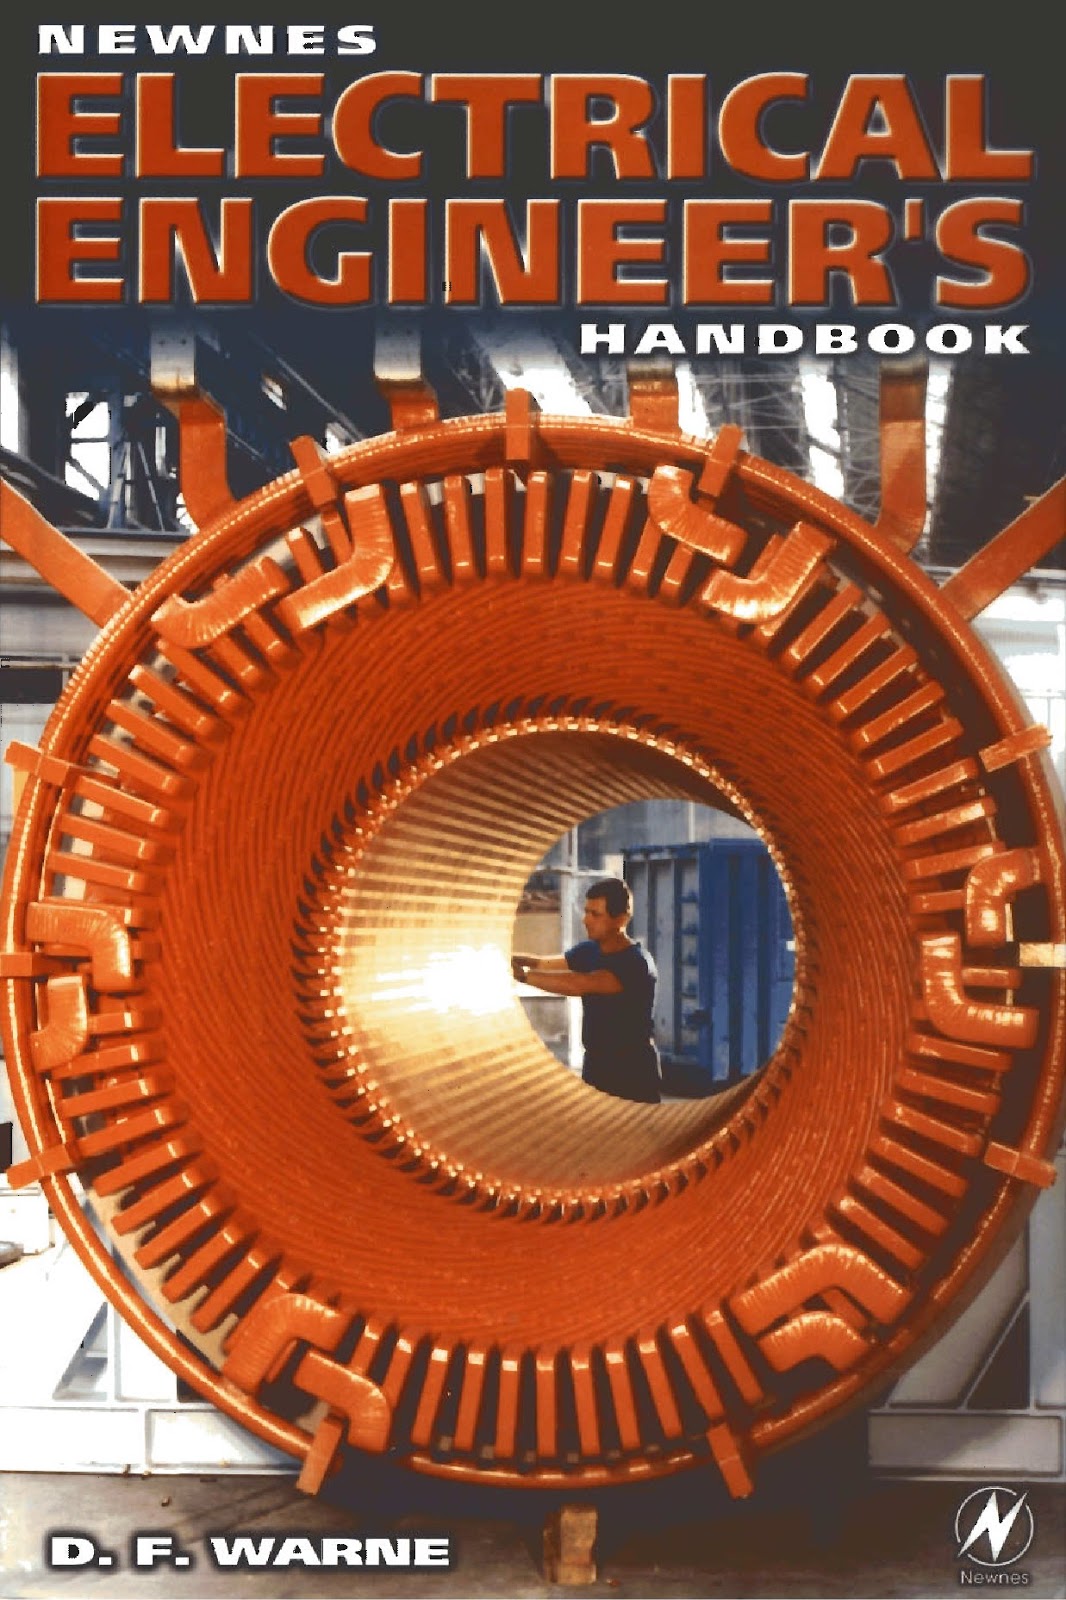 Newnes Electrical Engineer’s Handbook - Engineering Books